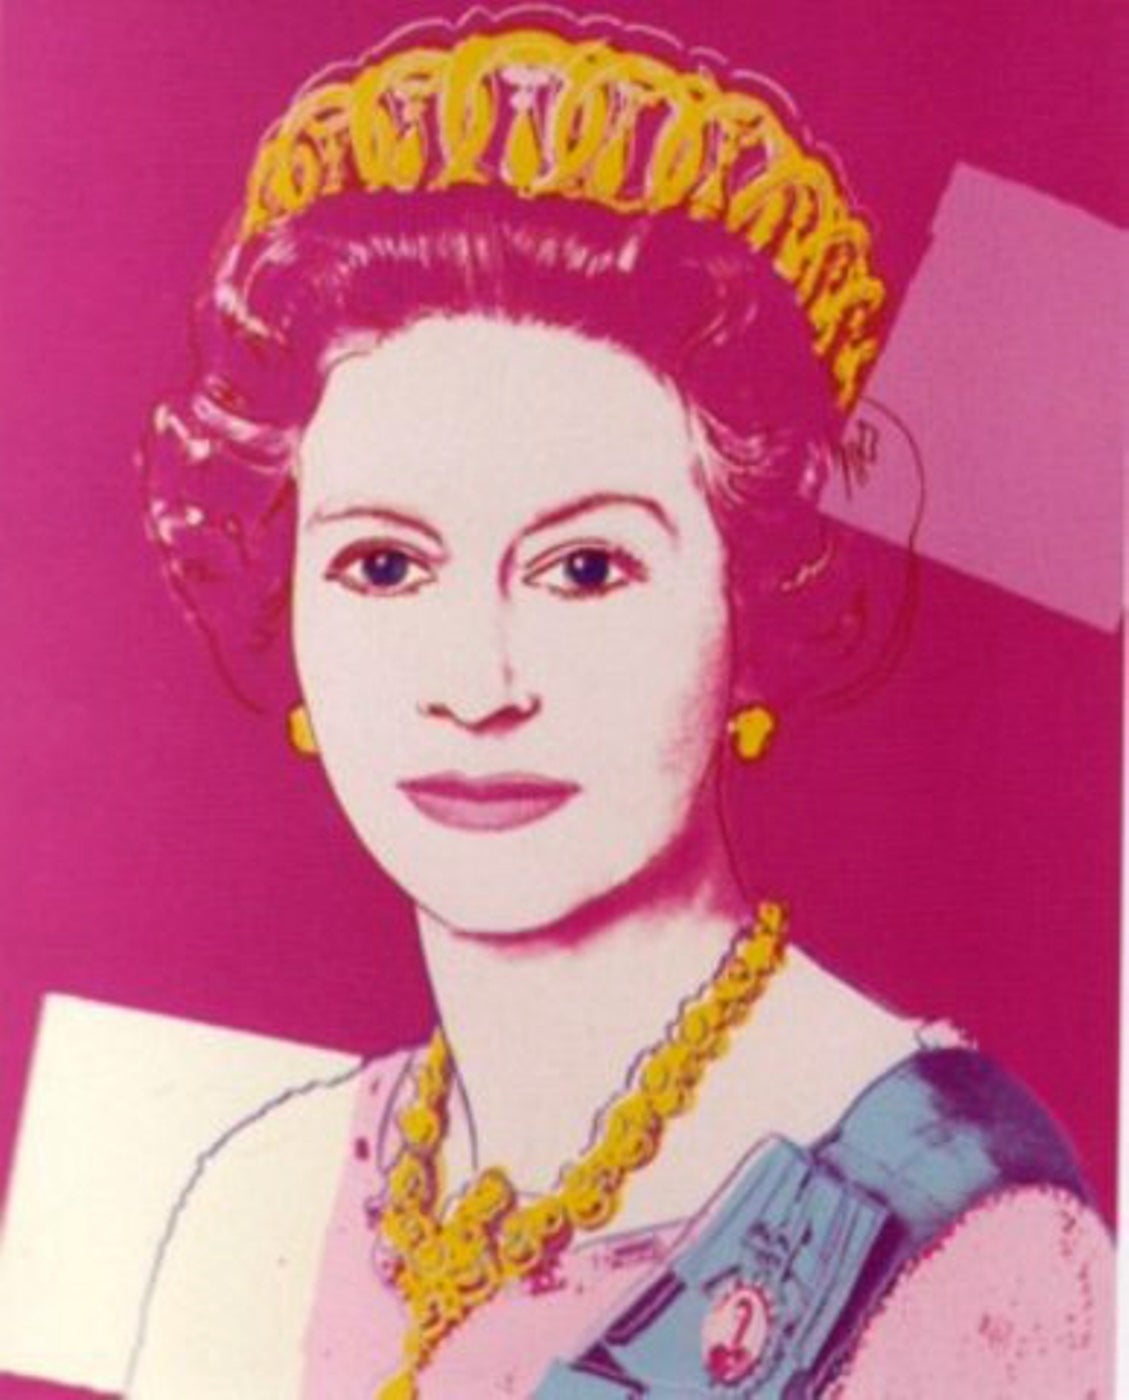 Queen Elizabeth II of the United Kingdom (II.336A) - Print by Andy Warhol